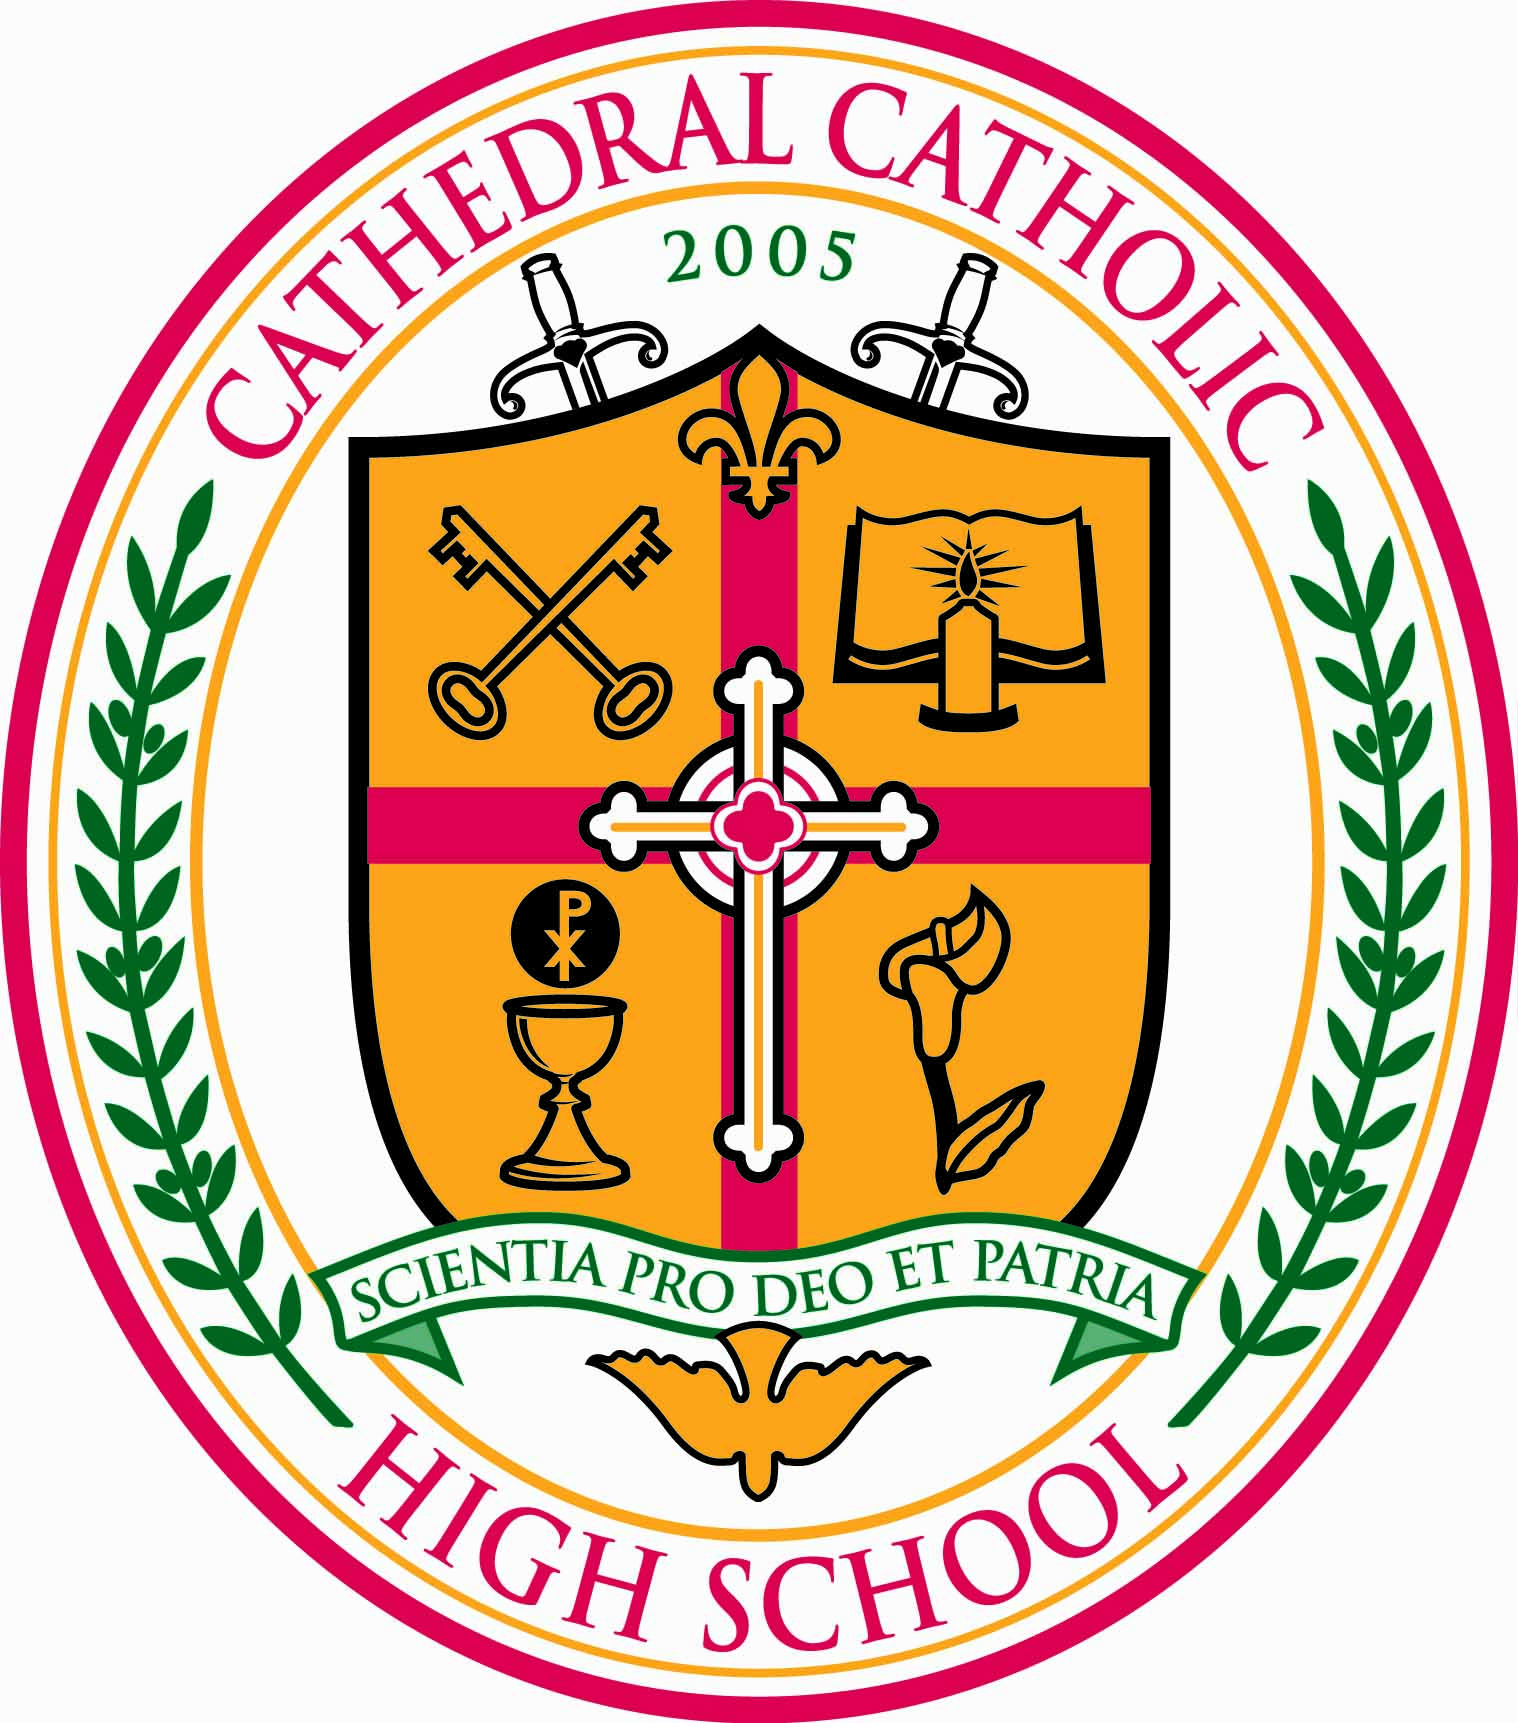 cathedral-catholic-high-school-in-san-diego-ca-niche